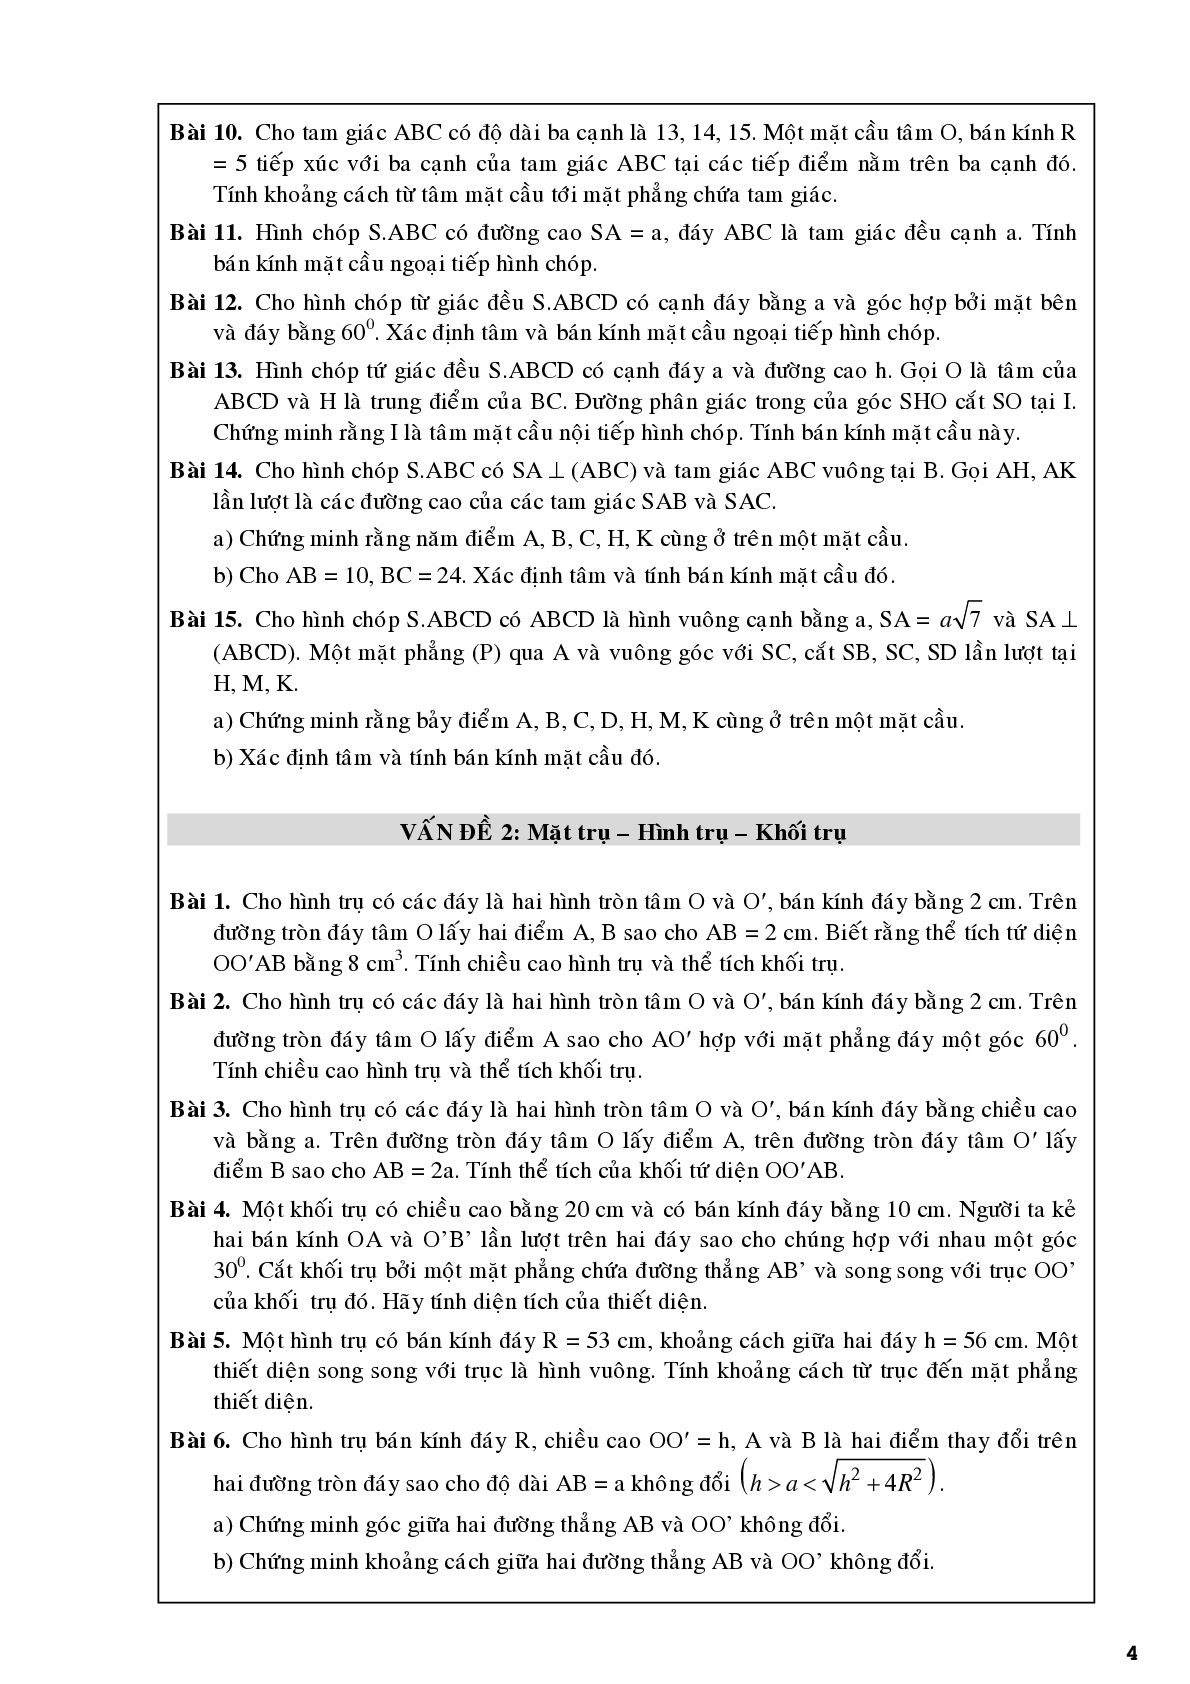 Bài tập về khối tròn xoay chọn lọc (trang 4)